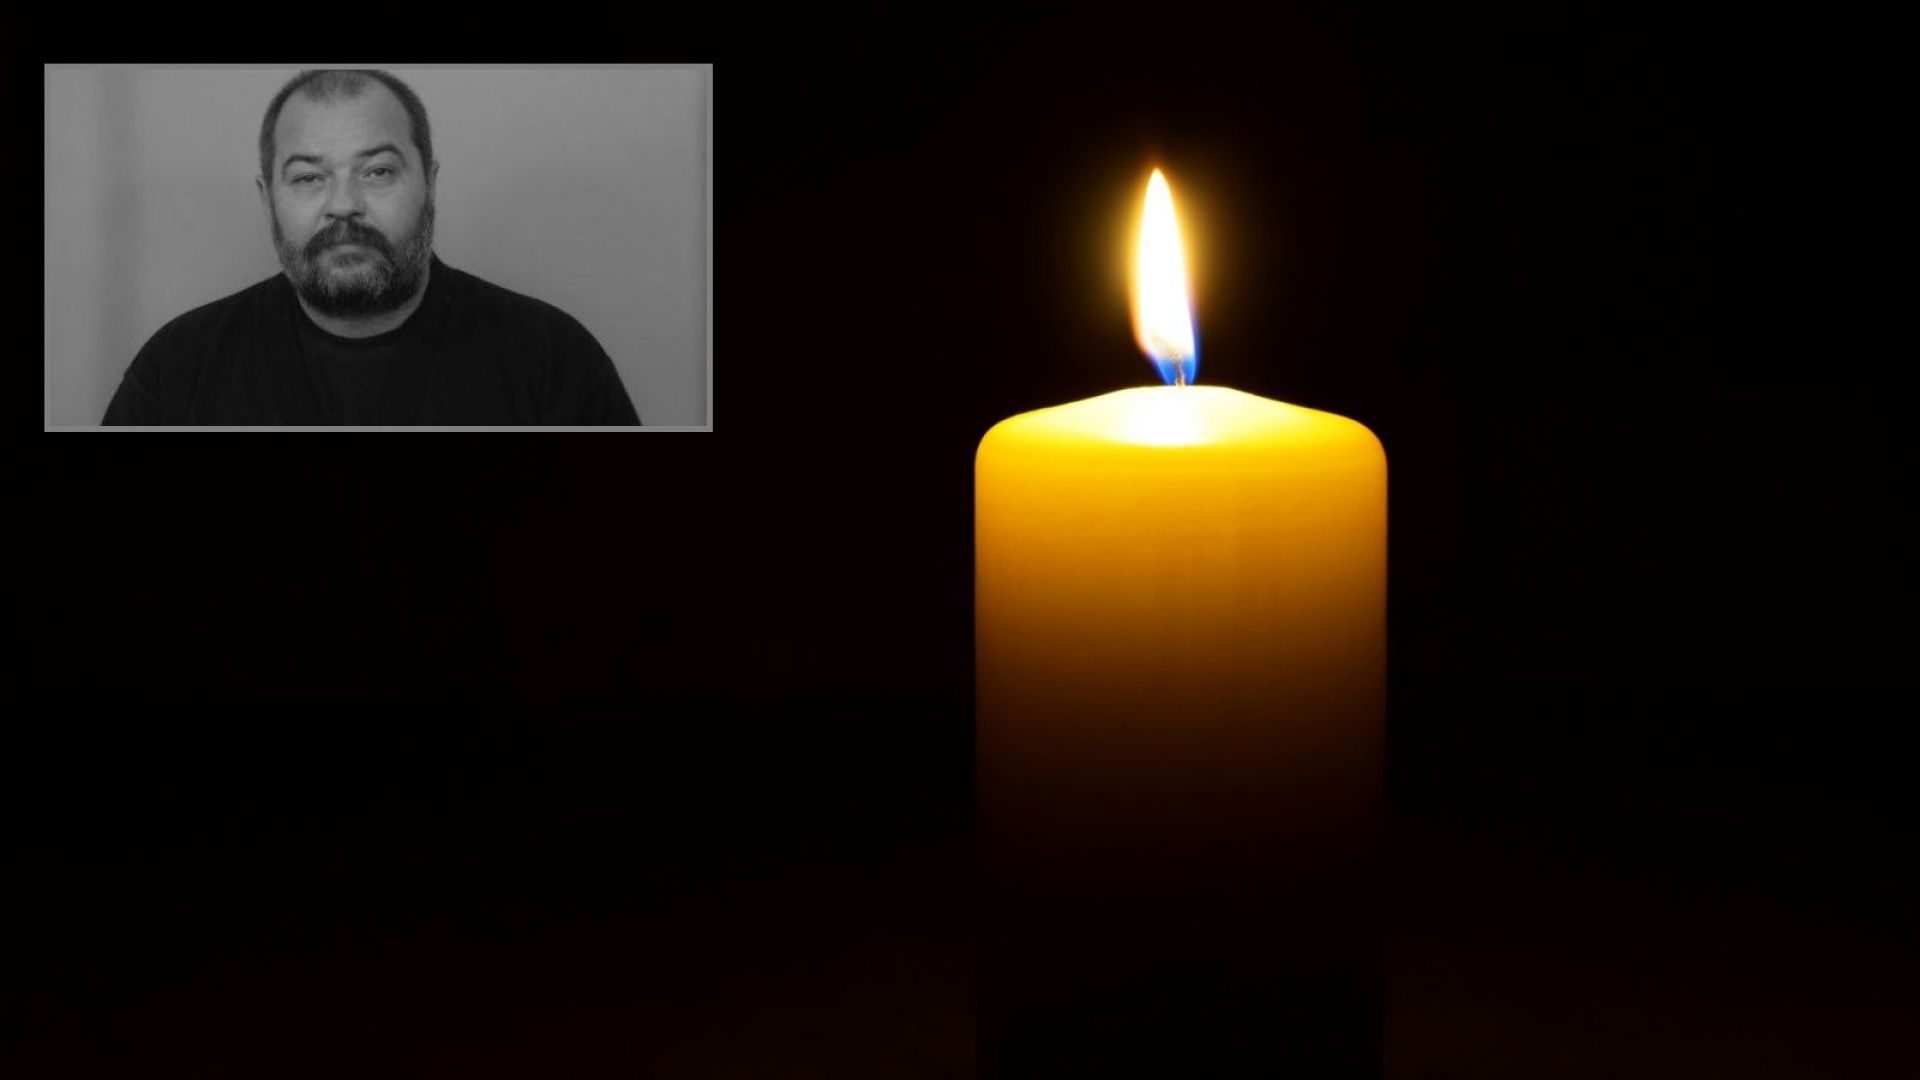 Почина журналистът от БНР Александър Михайлов